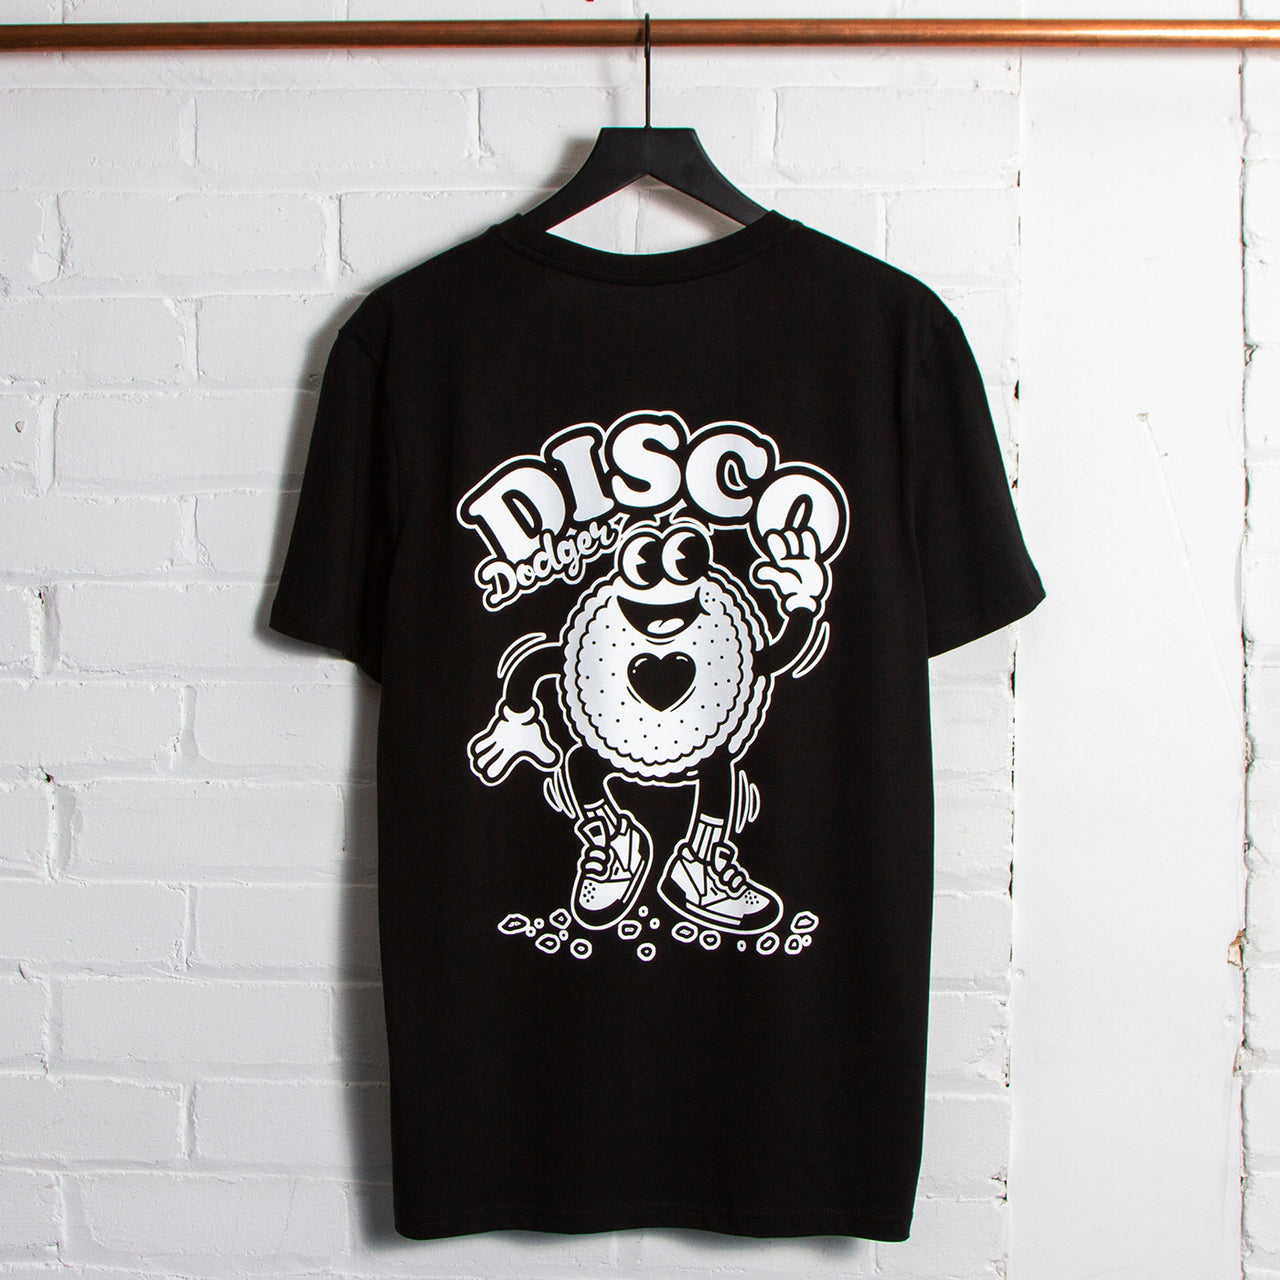 Disco Dodger Back - Tshirt - Black